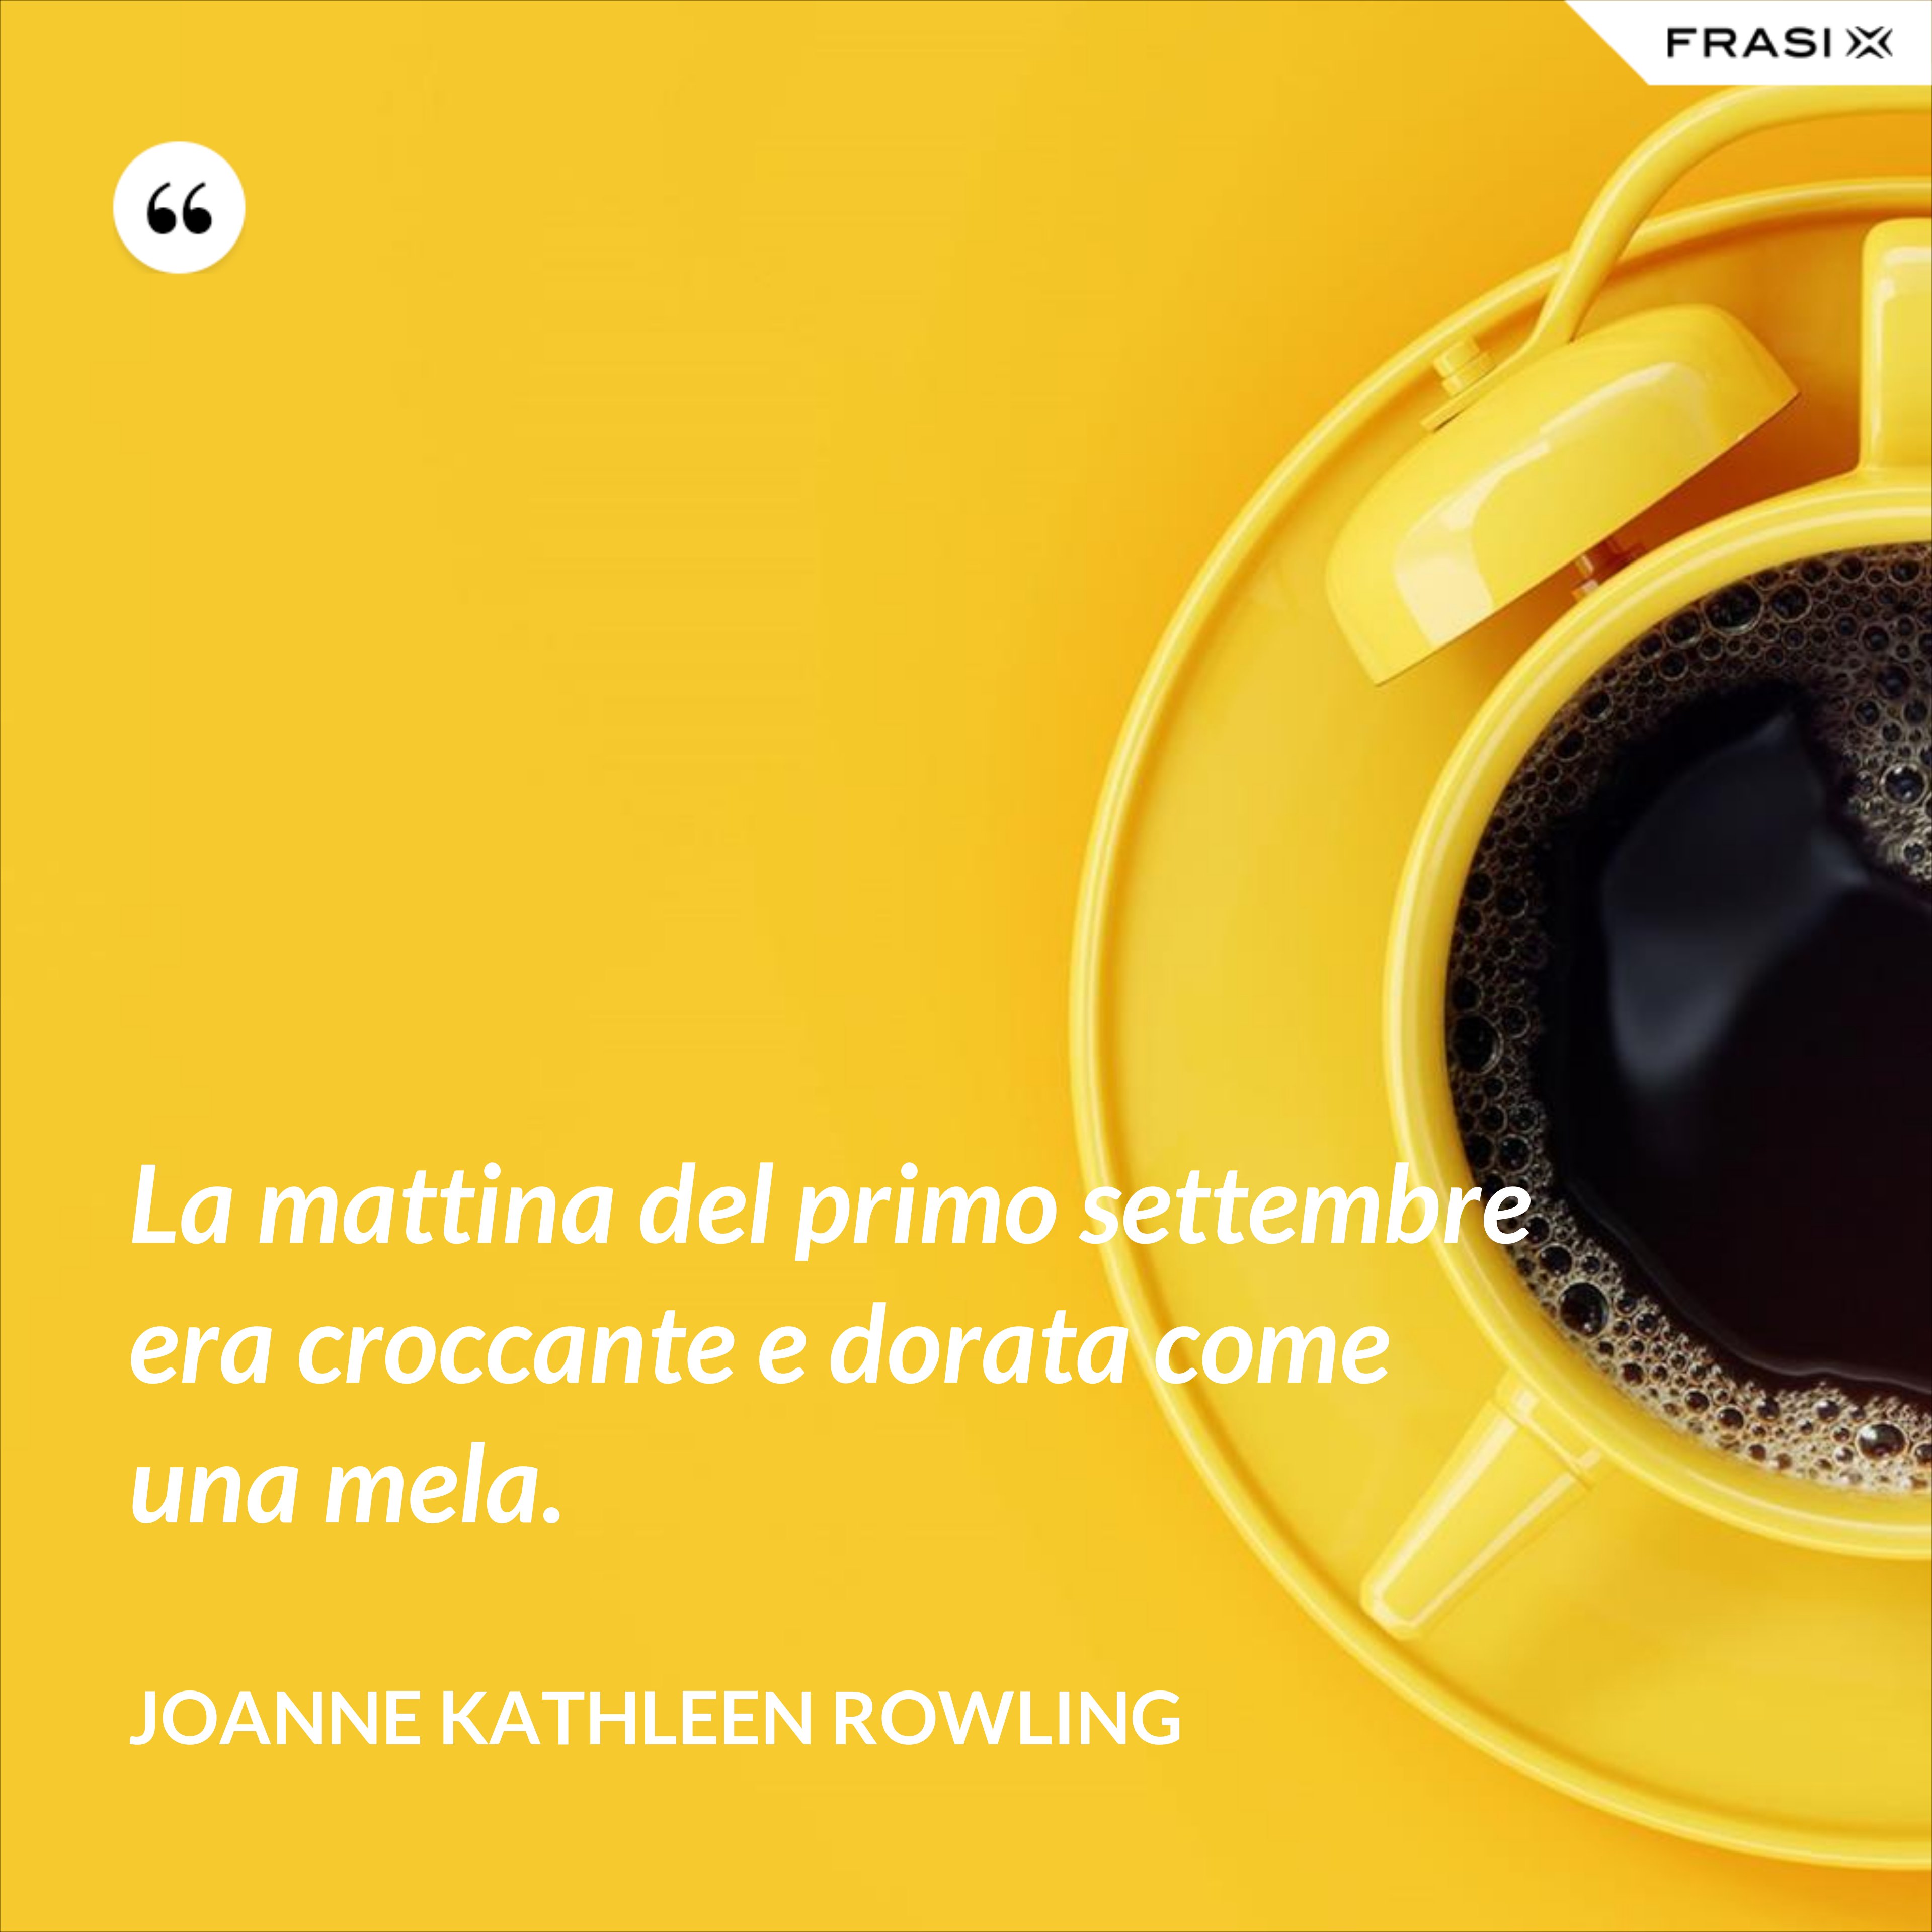 La mattina del primo settembre era croccante e dorata come una mela. - Joanne Kathleen Rowling